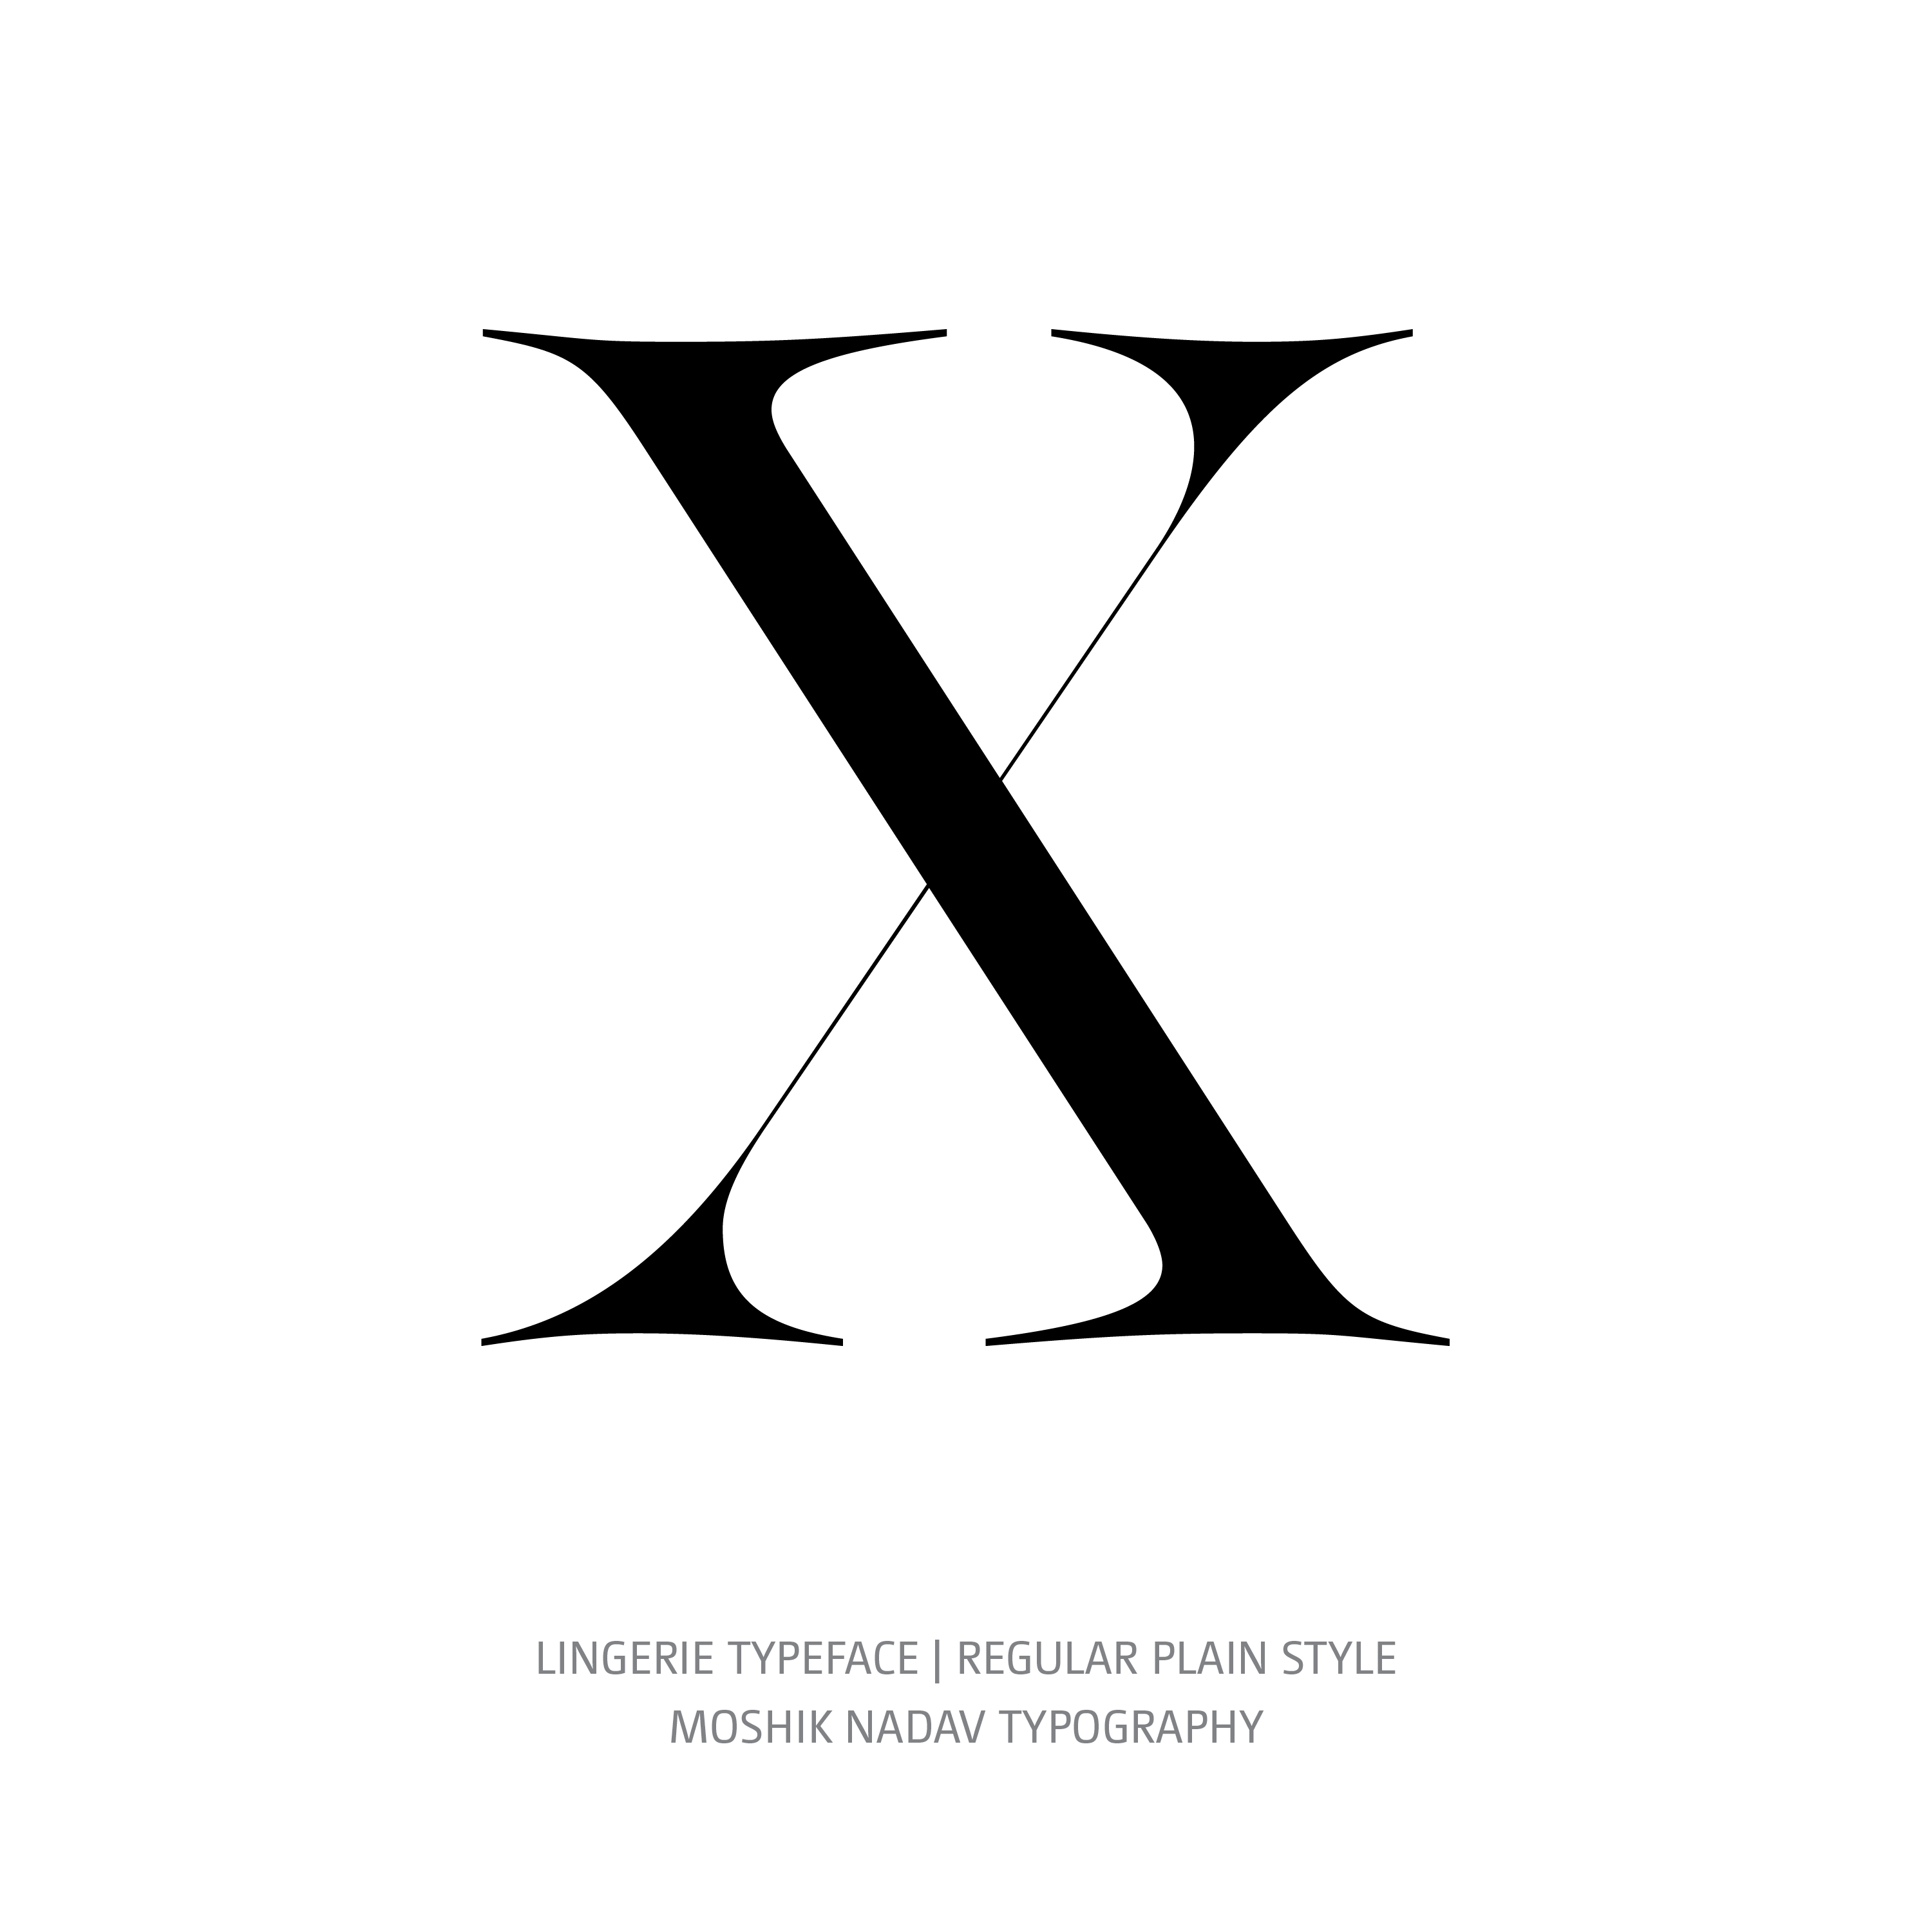 Lingerie Typeface Regular Plain X